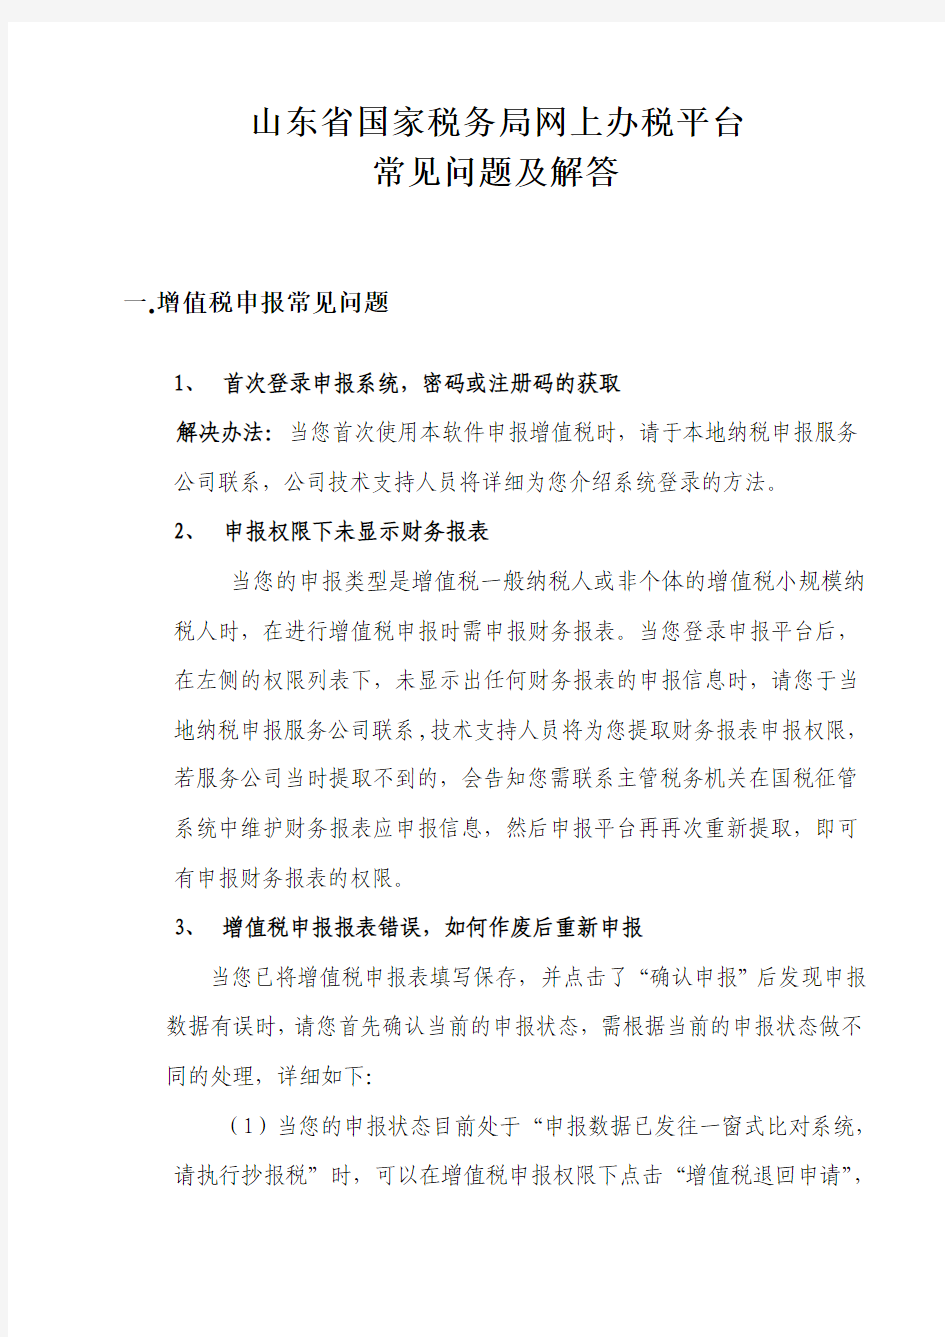 山东省国家税务局网上办税平台常见问题